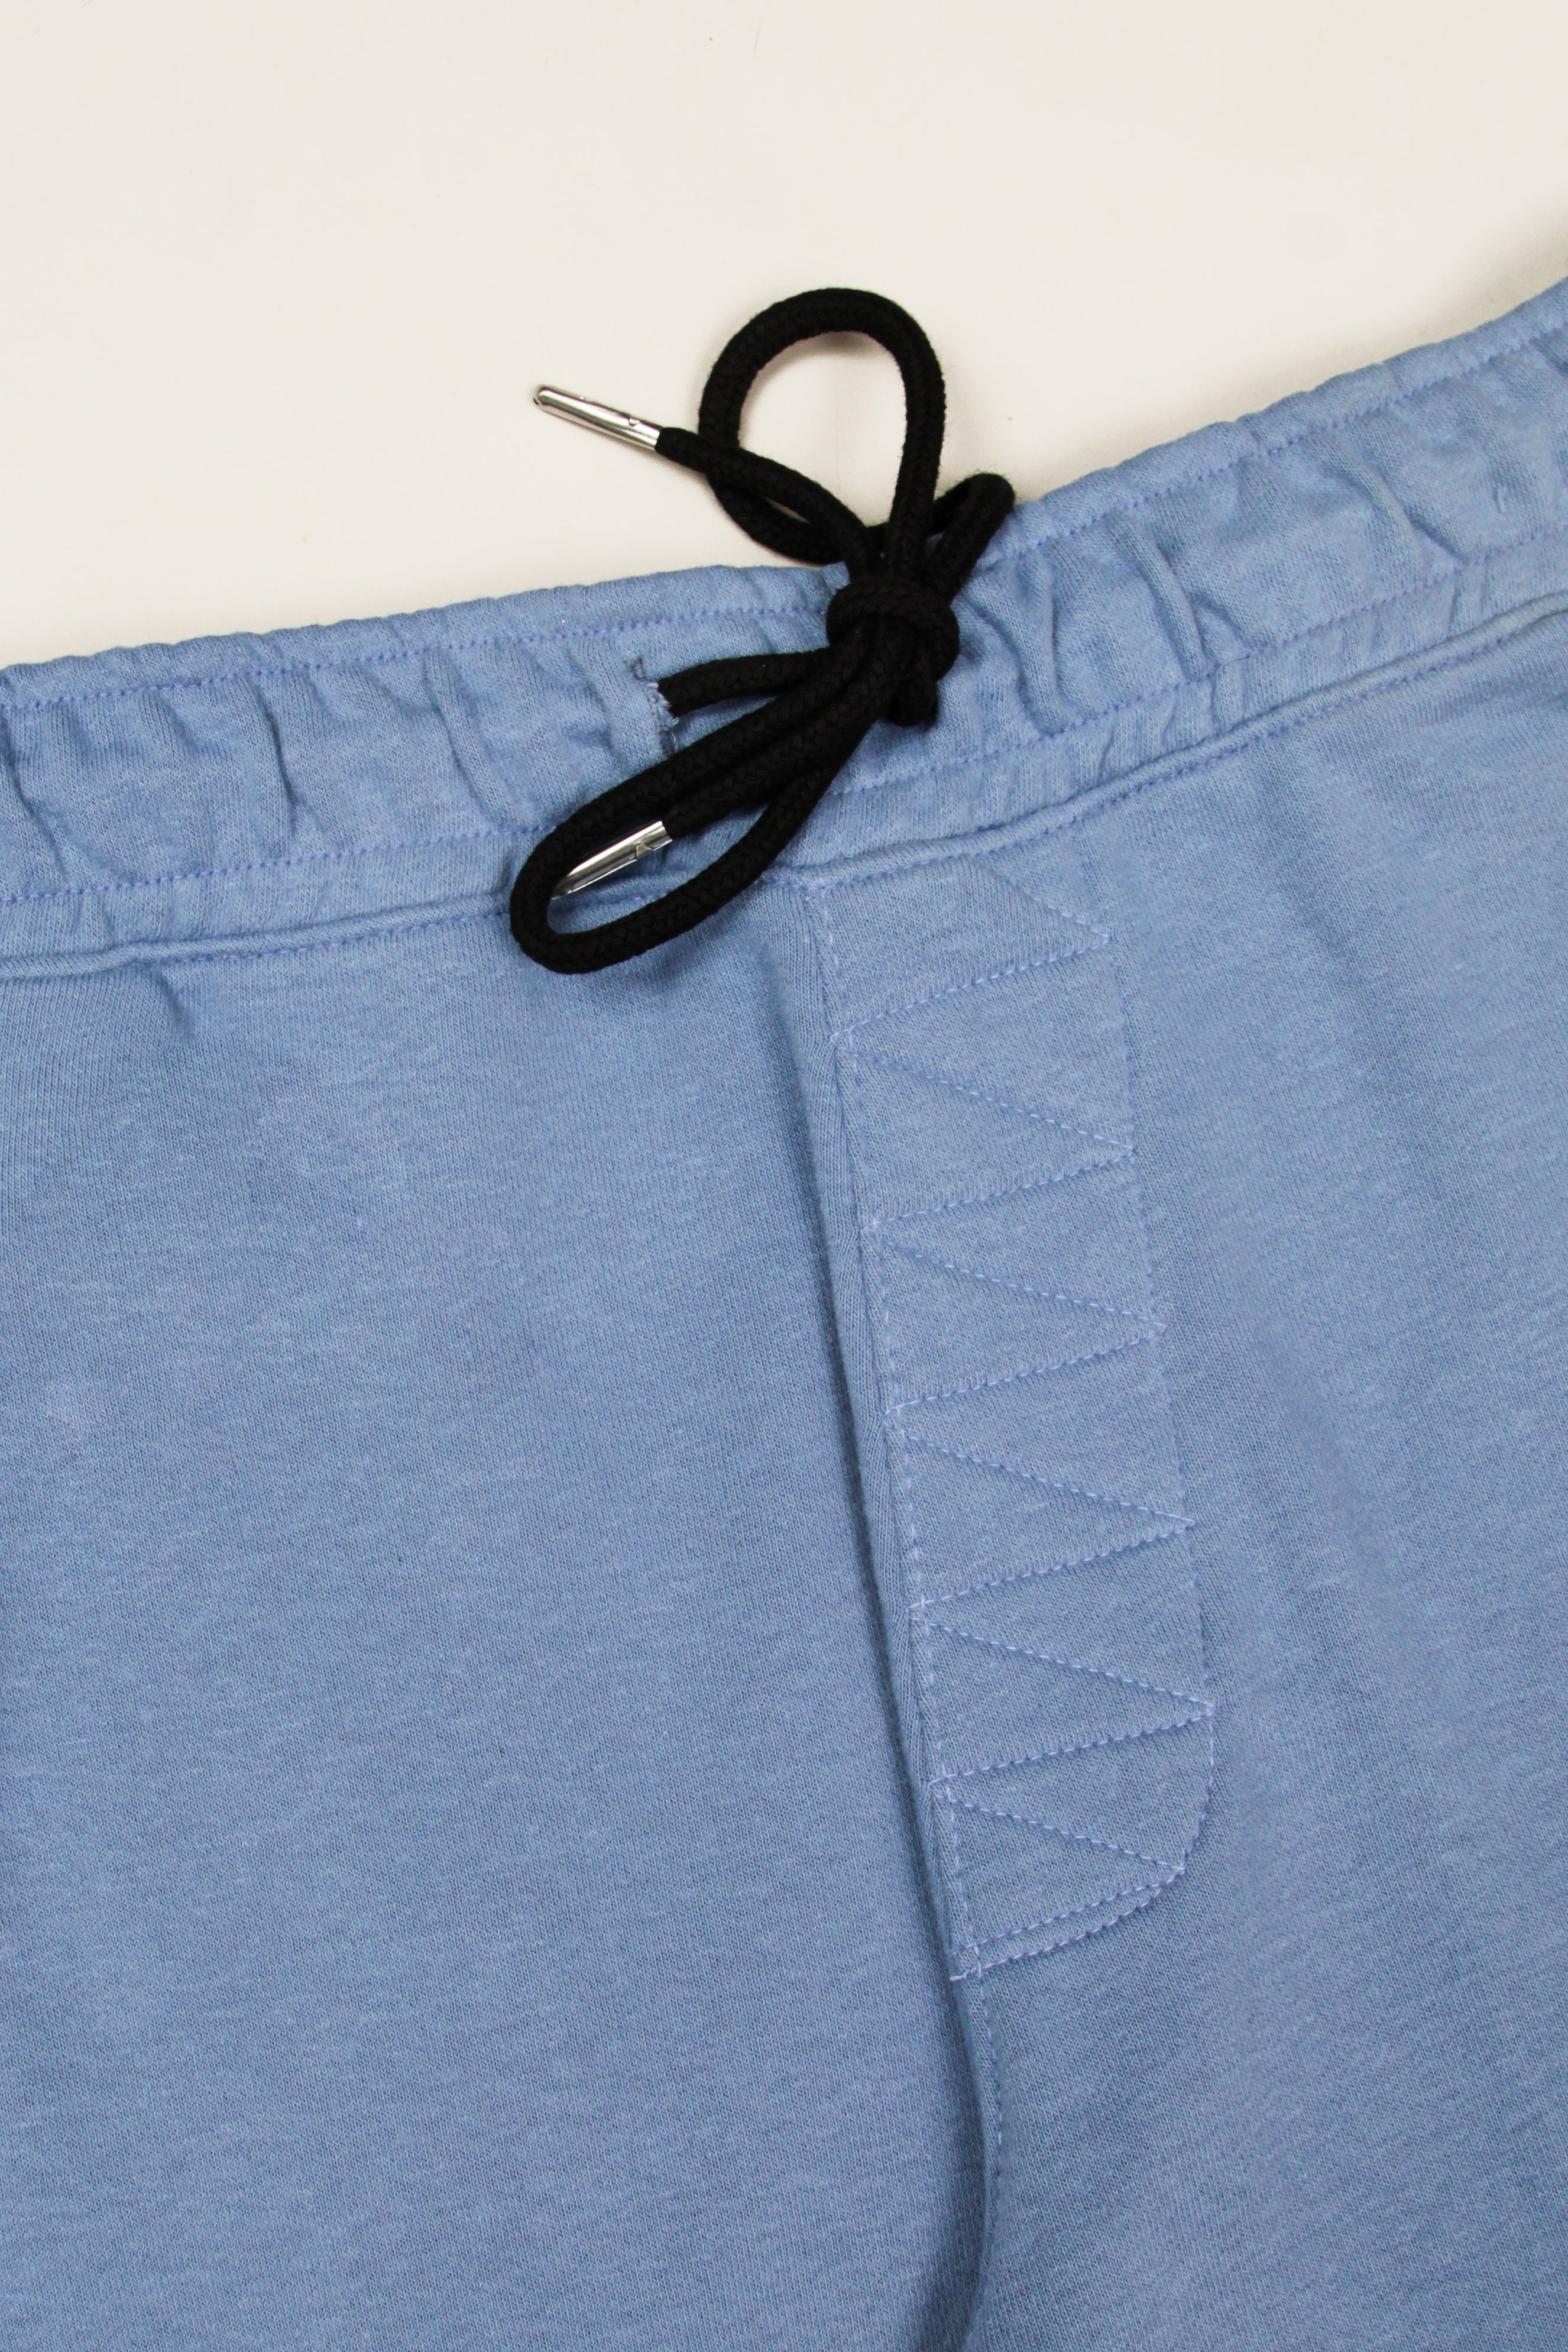 Men's Blue Graphic Trouser